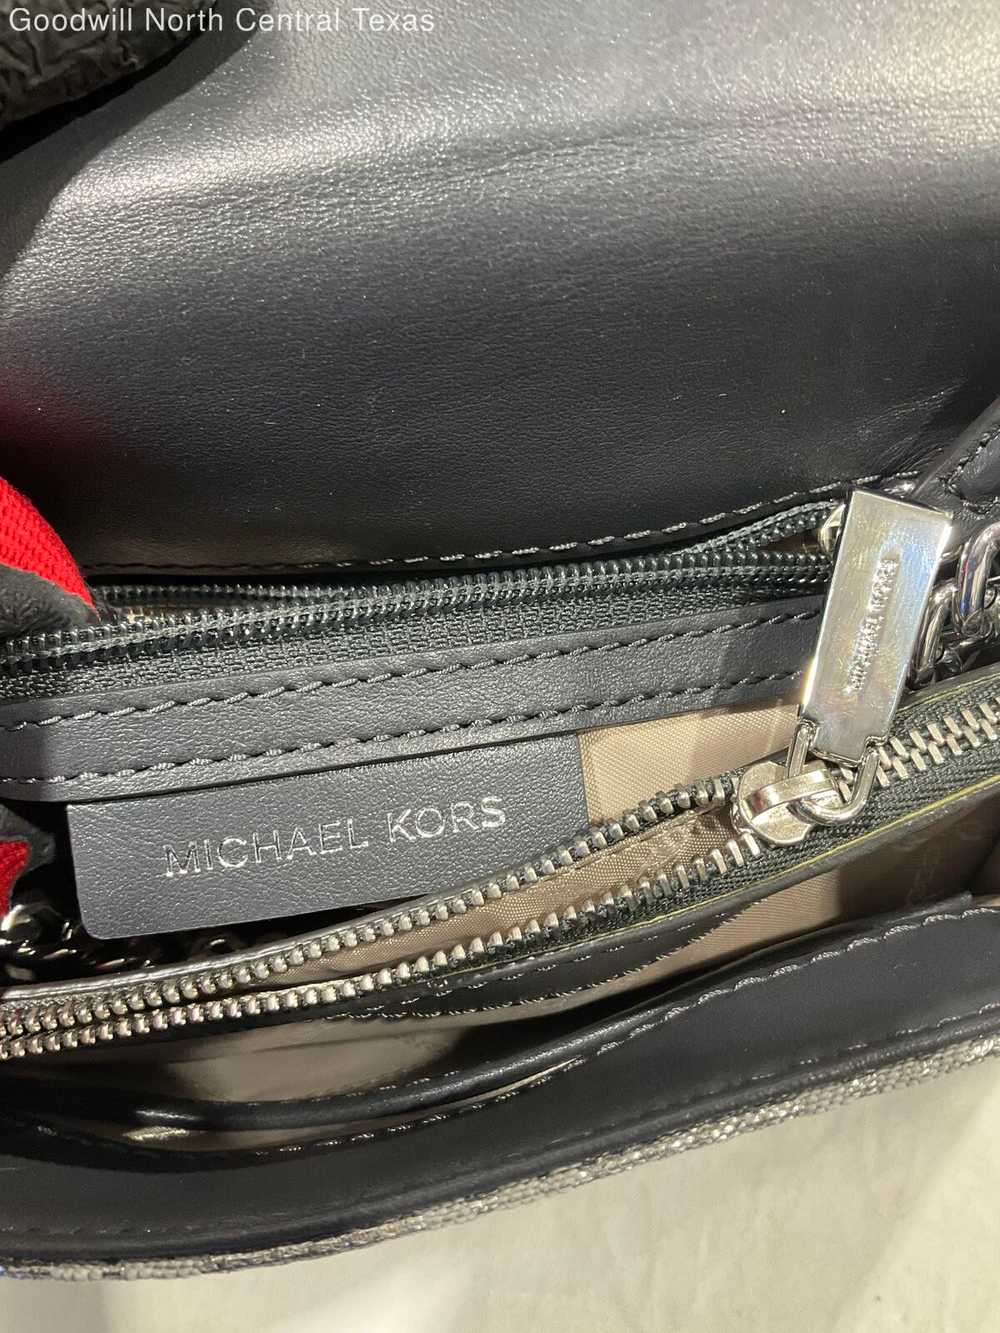 Michael Kors Designer Top Handle Bag - image 3